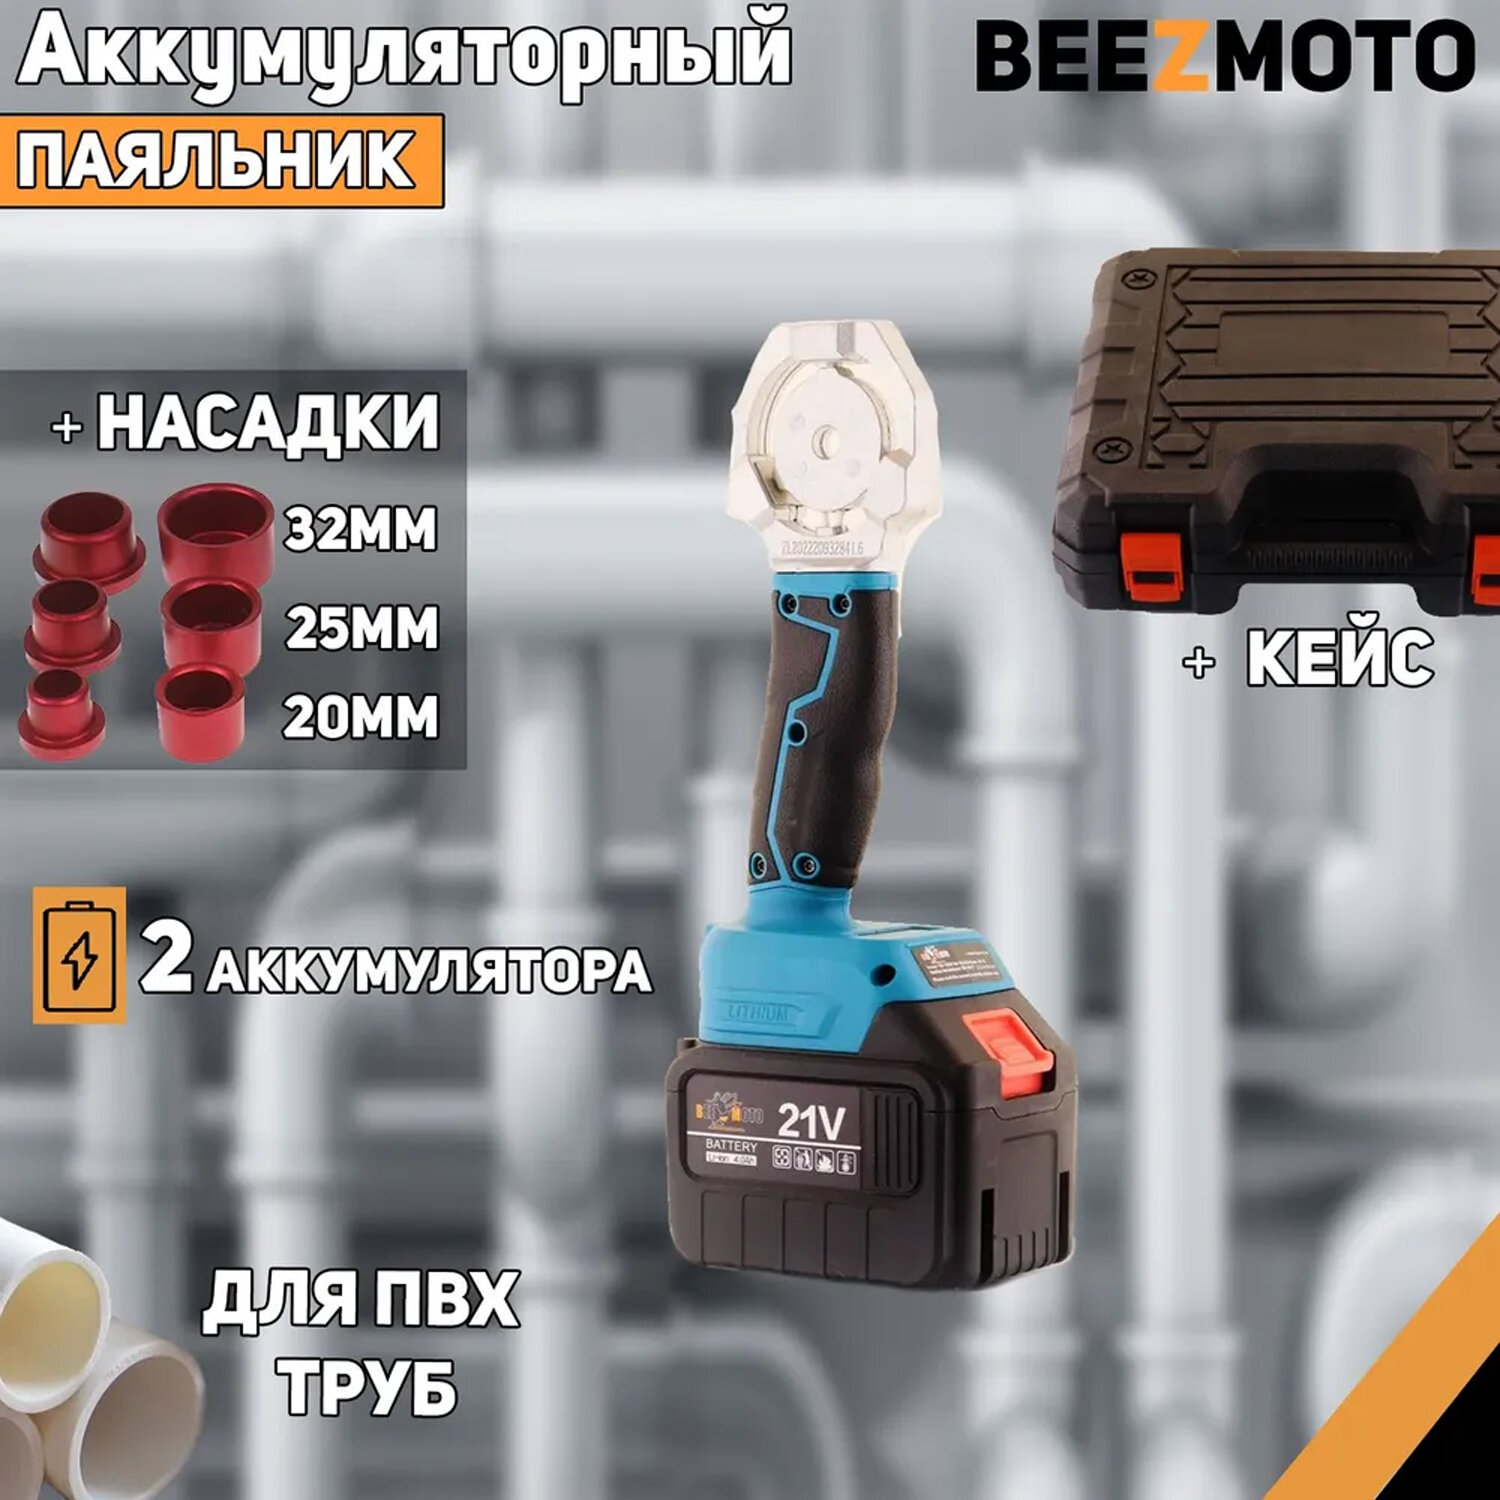 Аккумуляторный паяльник для ПВХ труб 21V (4,0Ah, 2 акб(Li-Ion), +насадки 20/25/32мм, ножницы, кейс) "BEEZMOTO"